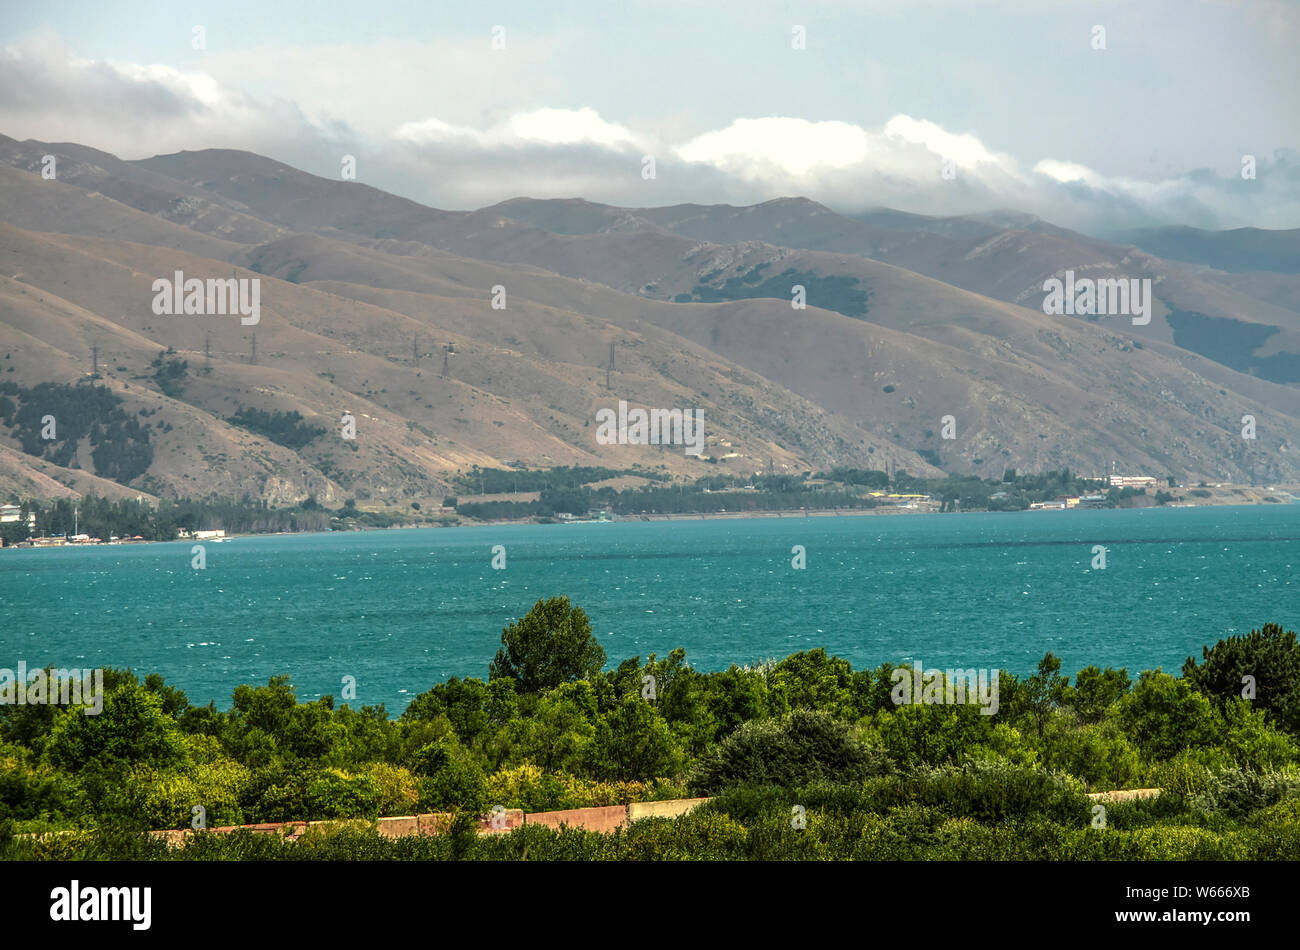 Die Ufer des Lake Sevan bedeckt mit Bäumen und Sträuchern durch die Berge von gegham Ridge auf einer Höhe von 1900 Meter über dem Meeresspiegel umgeben Stockfoto